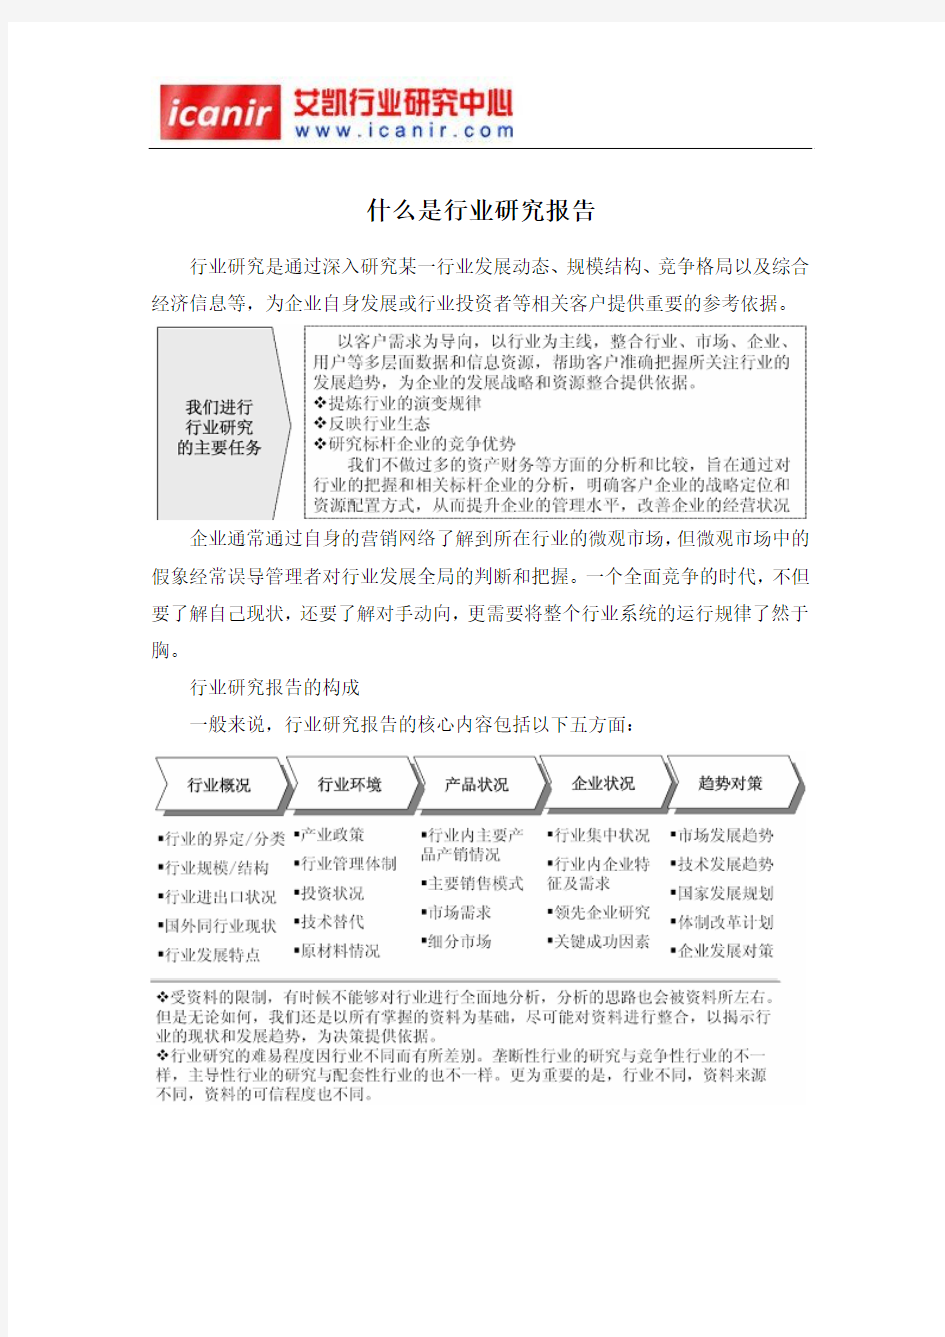 2016-2022年中国丝光棉袜市场深度调研与投资战略研究报告